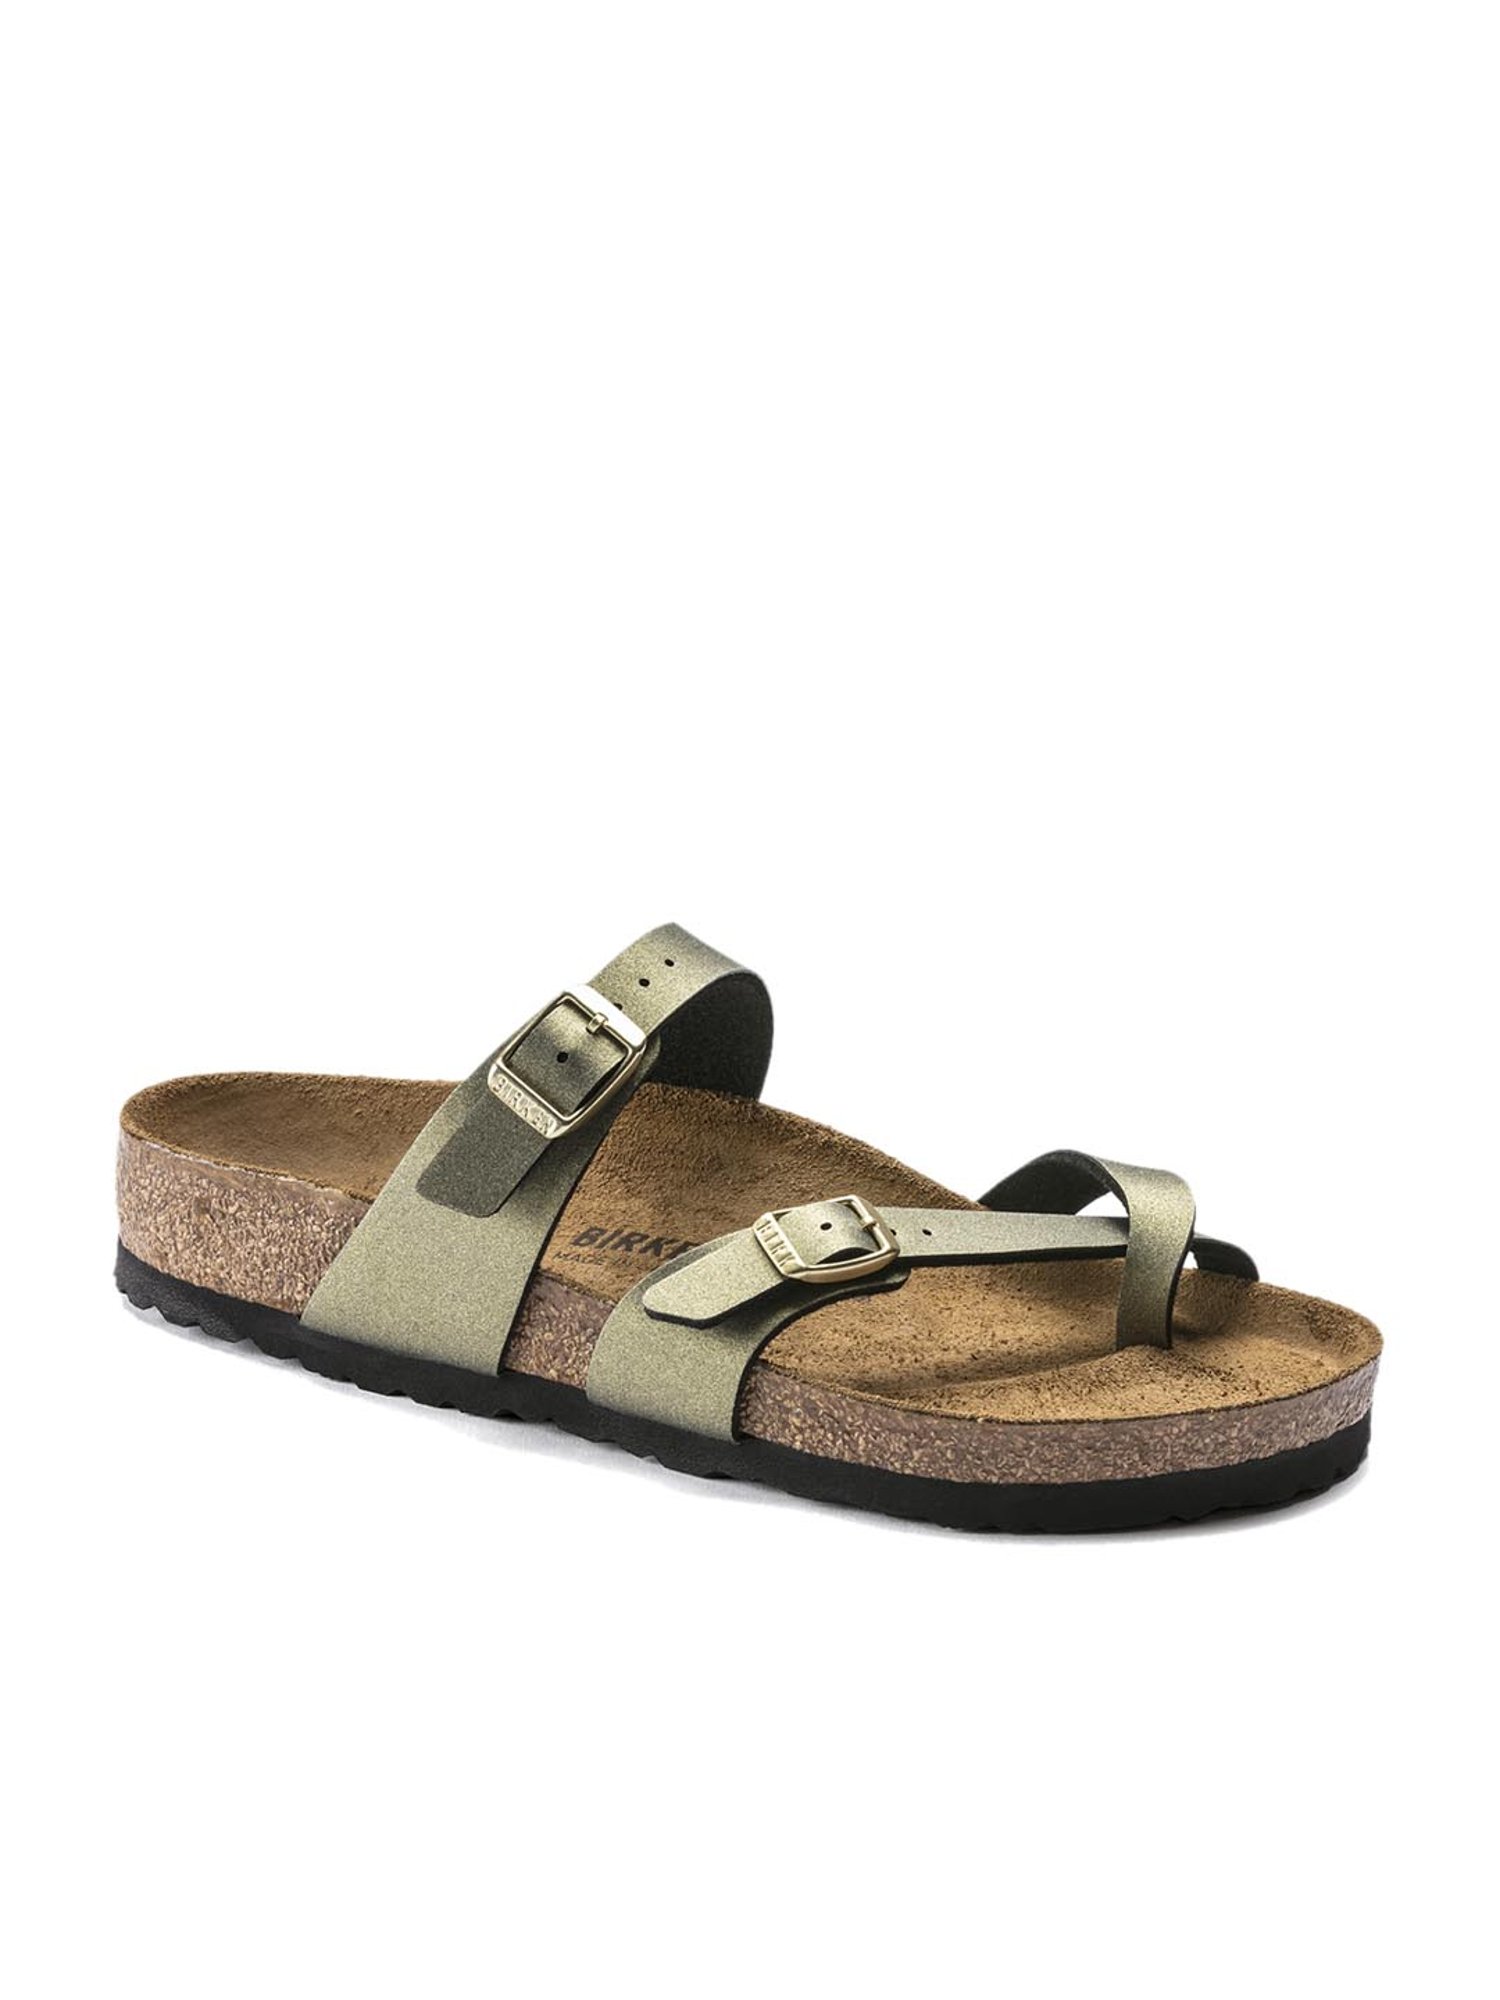 birkenstock cross strap sandals